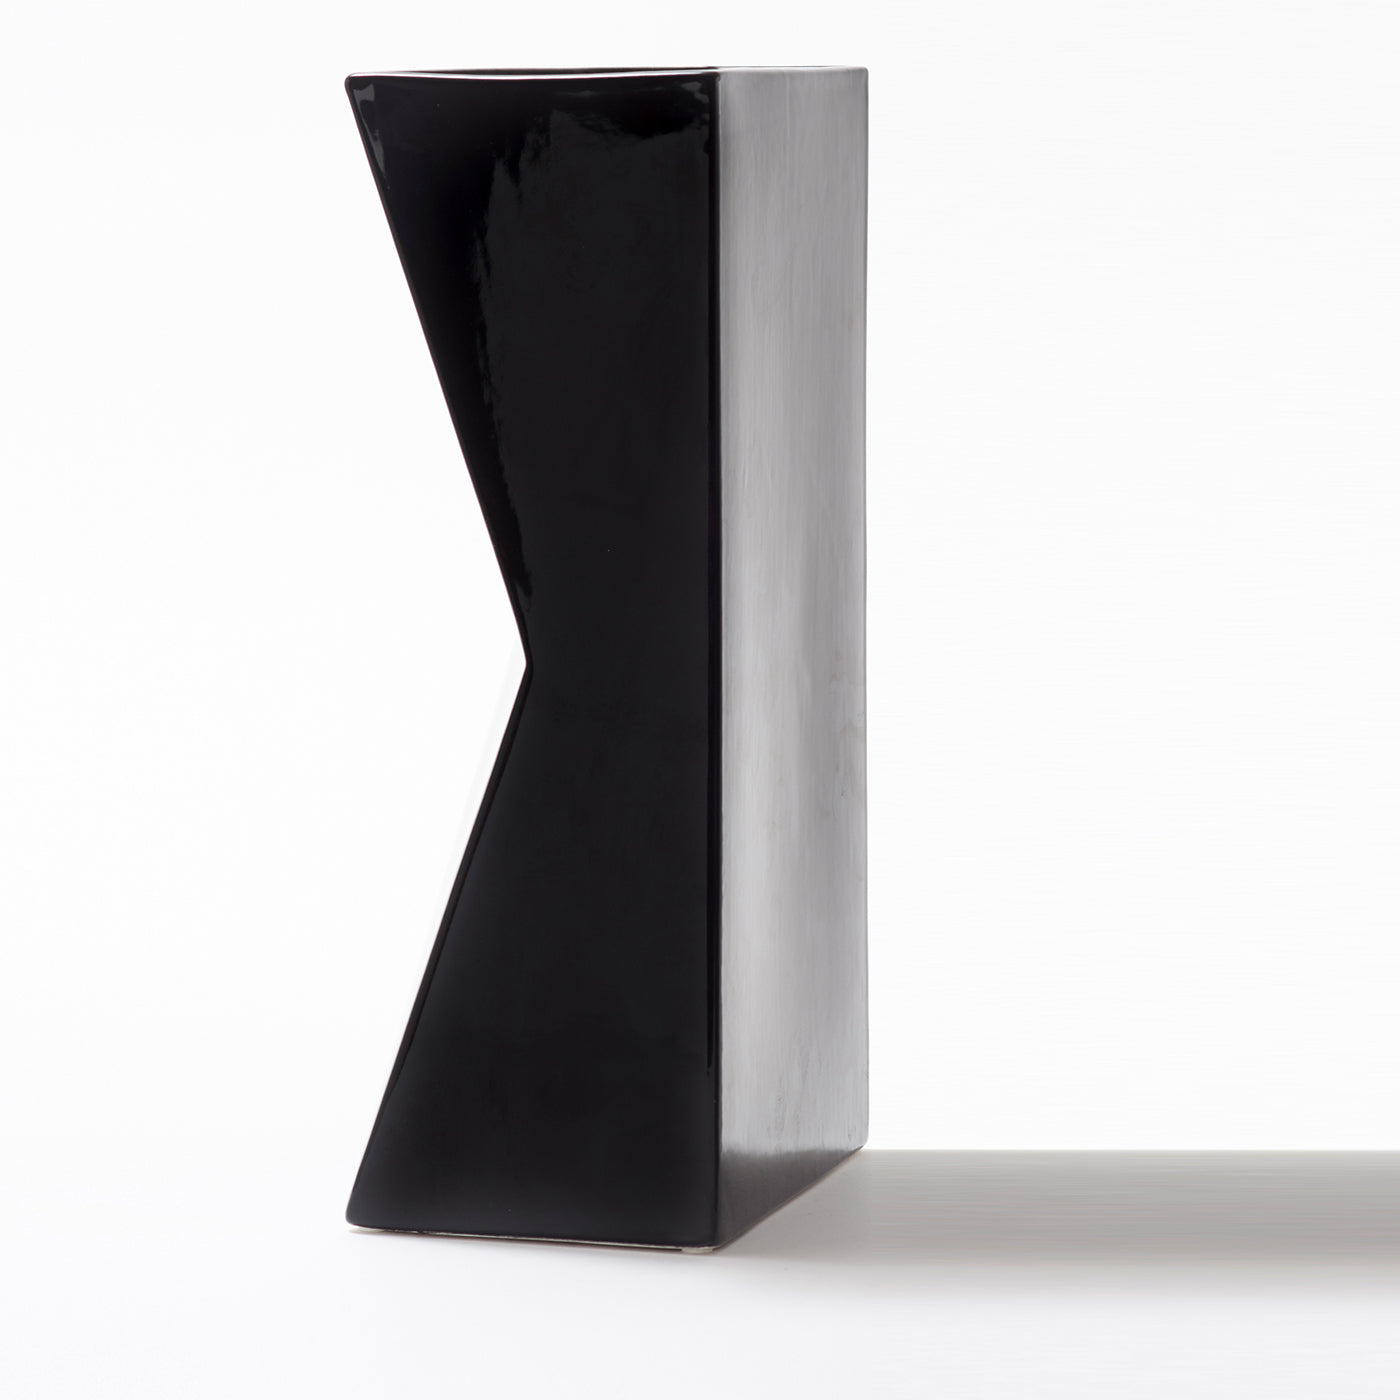 Schwarze Verso-Vase von Antonio Saporito - Alternative Ansicht 2